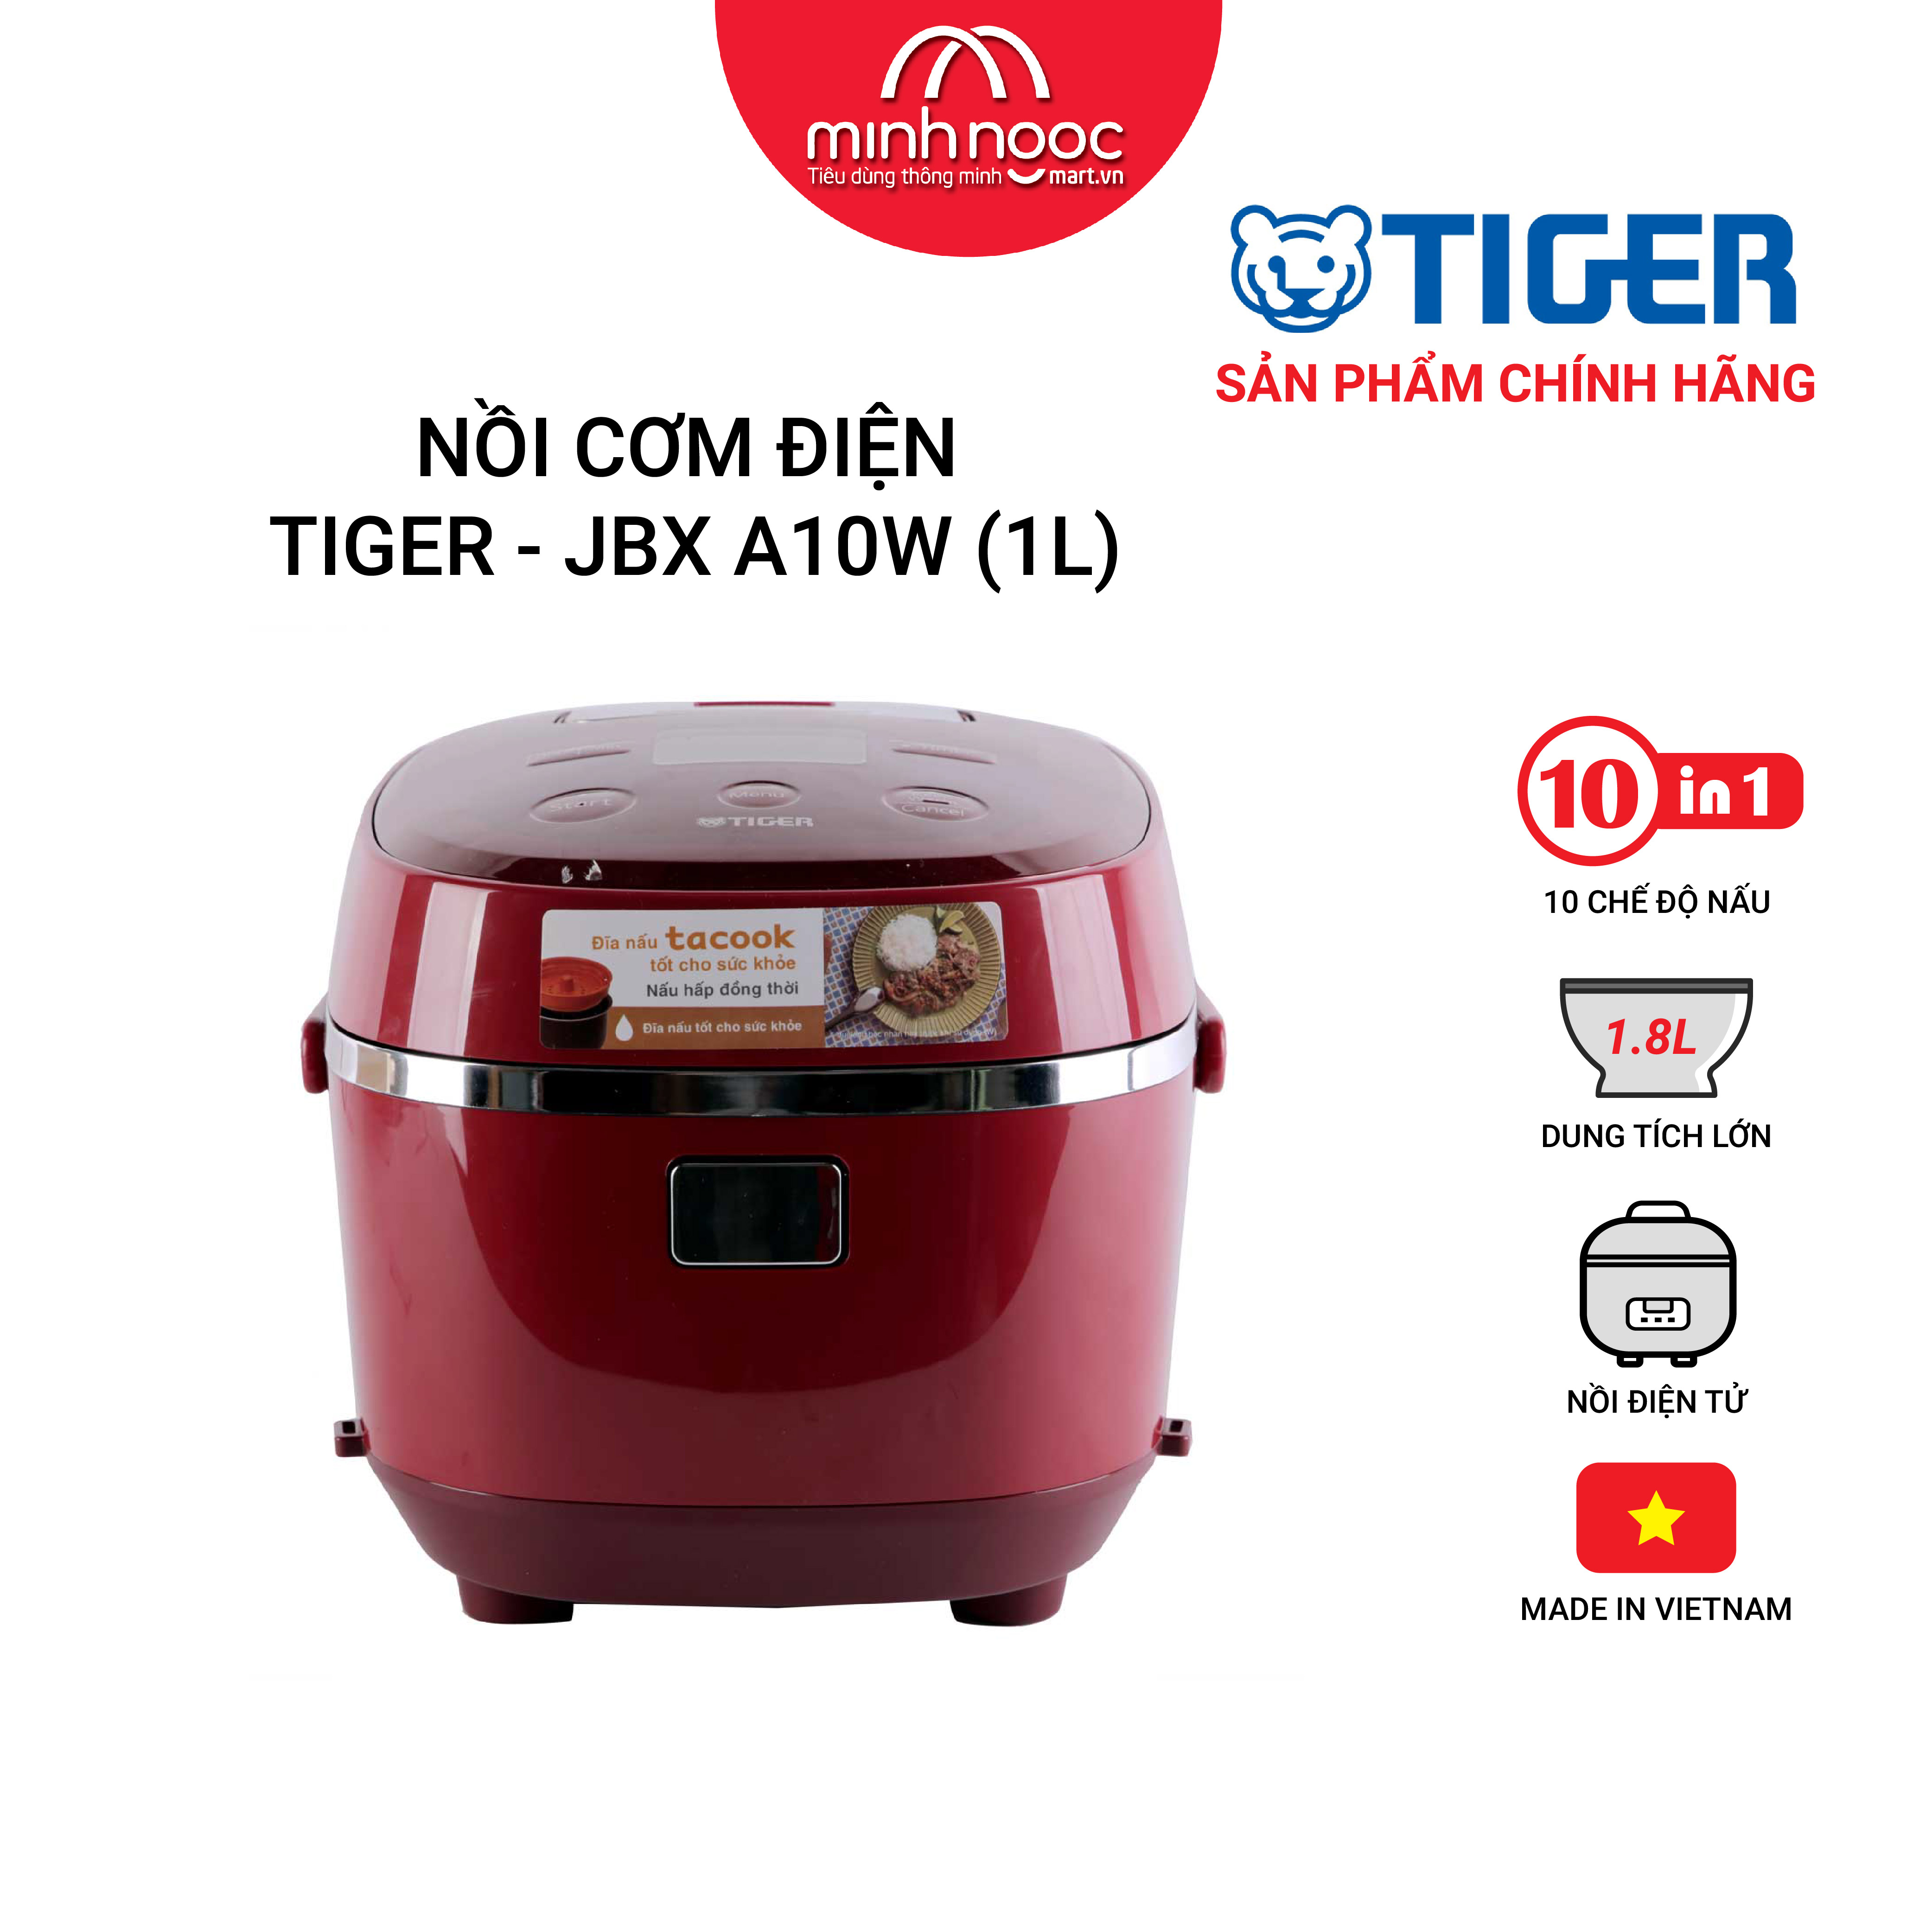 Hình ảnh HÀNG CHÍNH HÃNG: Nồi cơm điện Tiger dung tích 1.0l  JBX-A10W màu đỏ